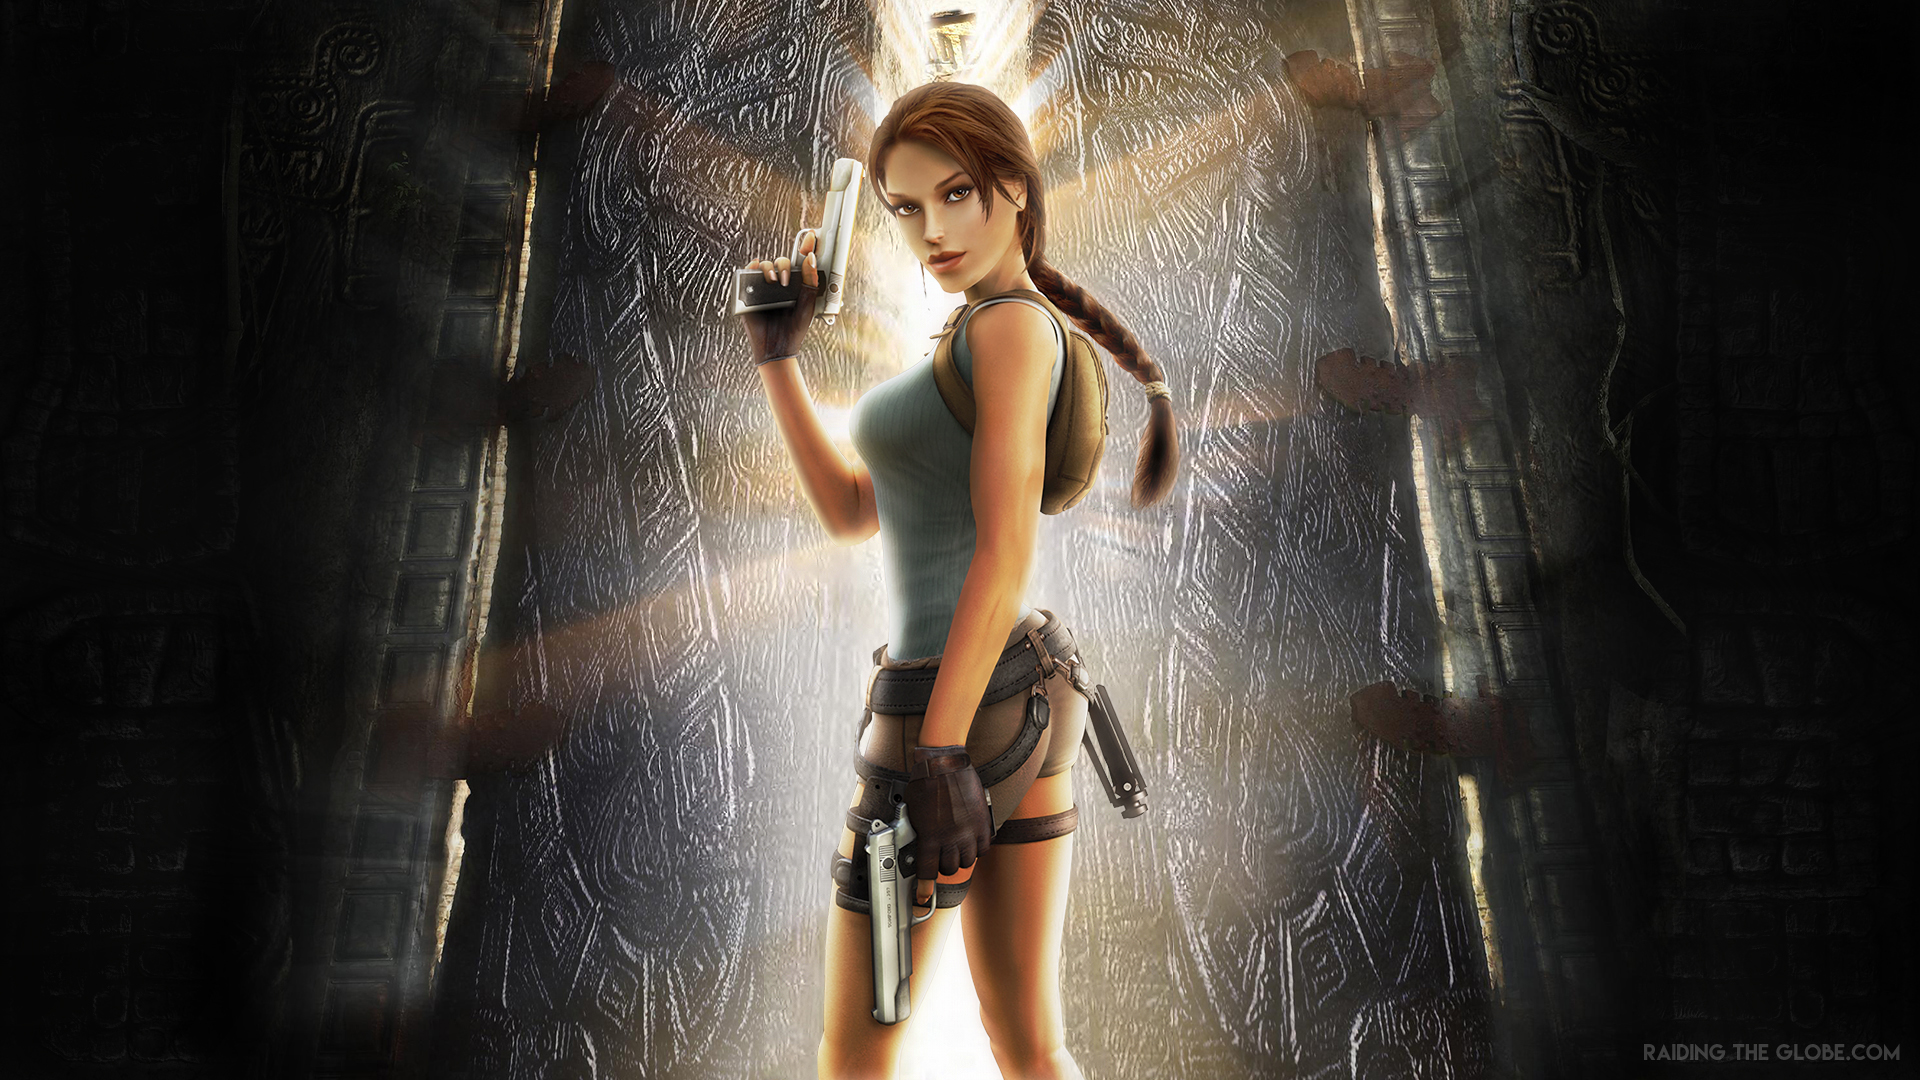 Tomb Raider: Anniversary Wallpapers - Raiding The Globe